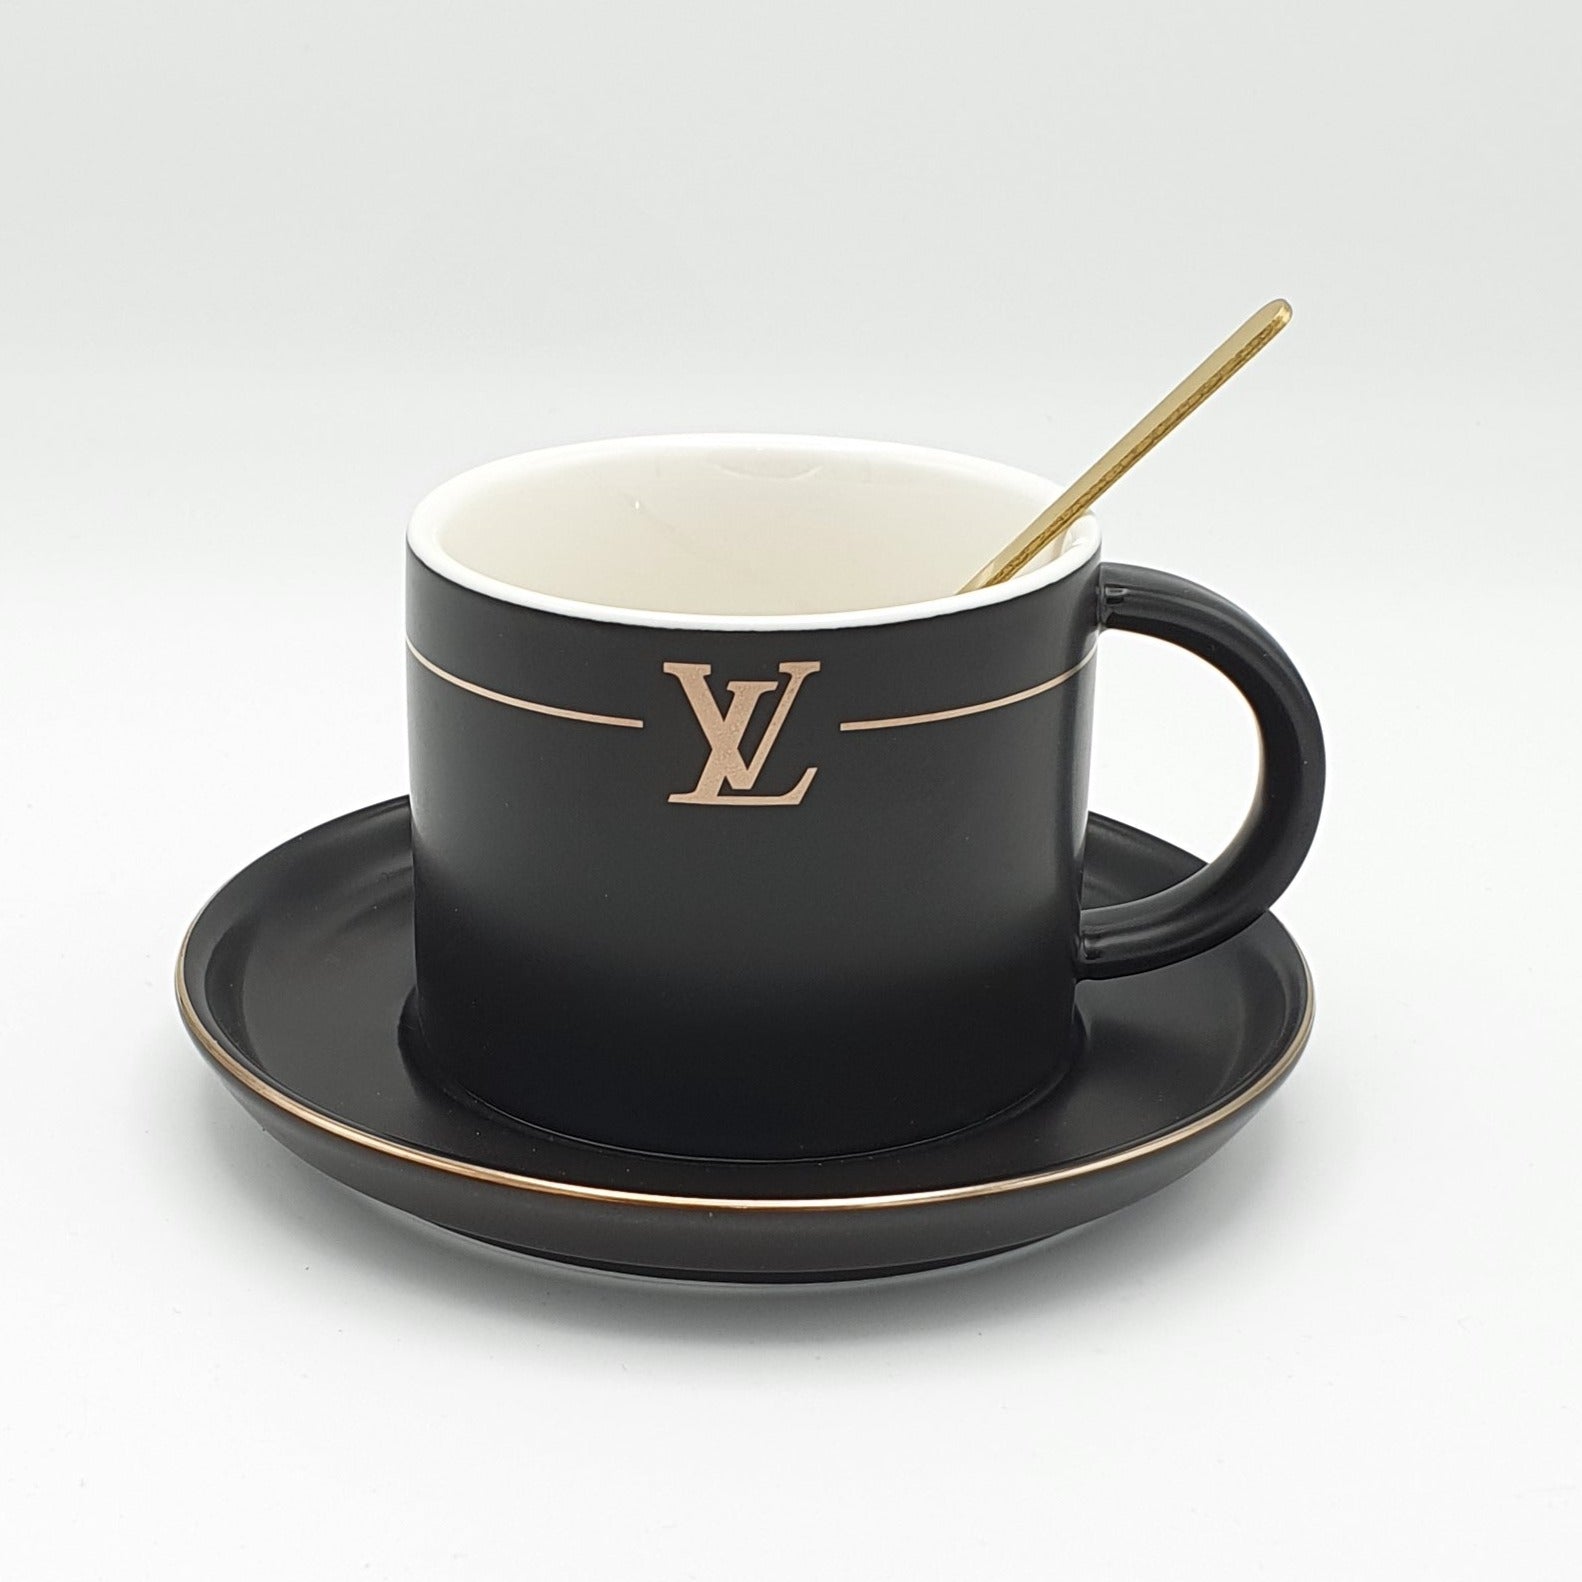 lv design cups